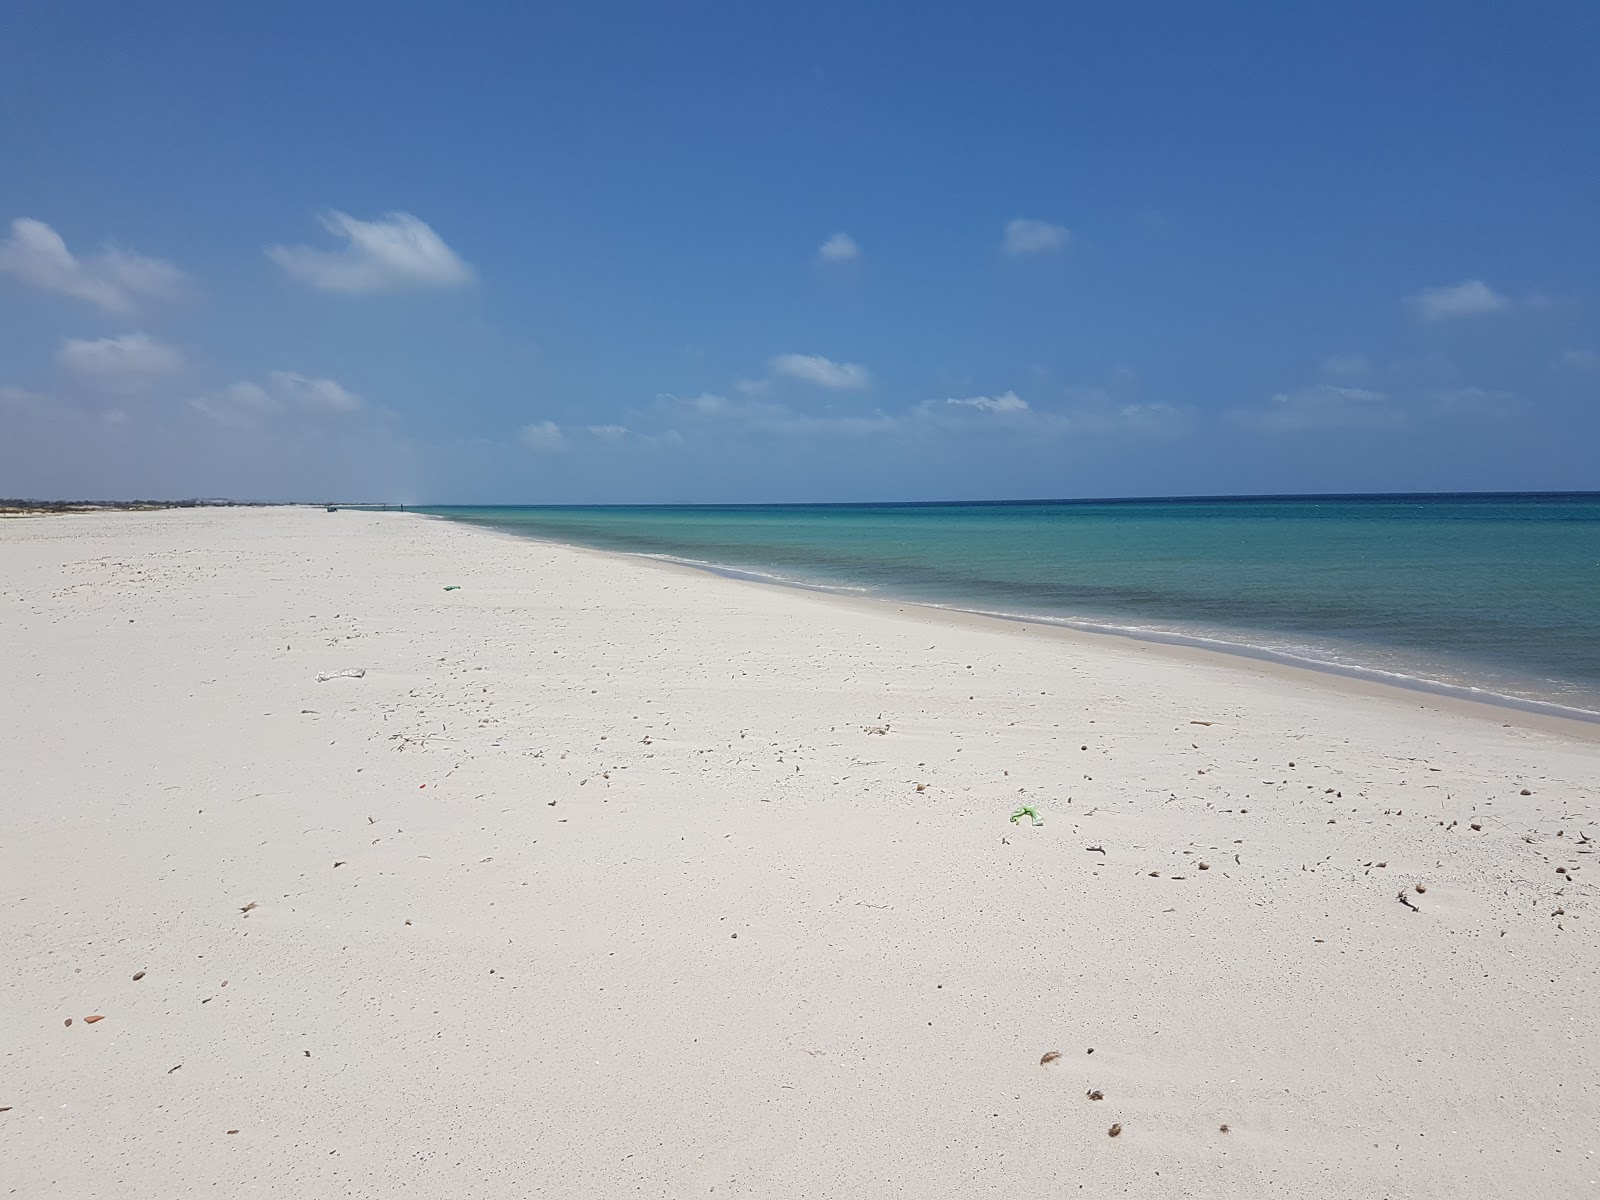 Zdjęcie Menzel Or beach z powierzchnią jasny, drobny piasek